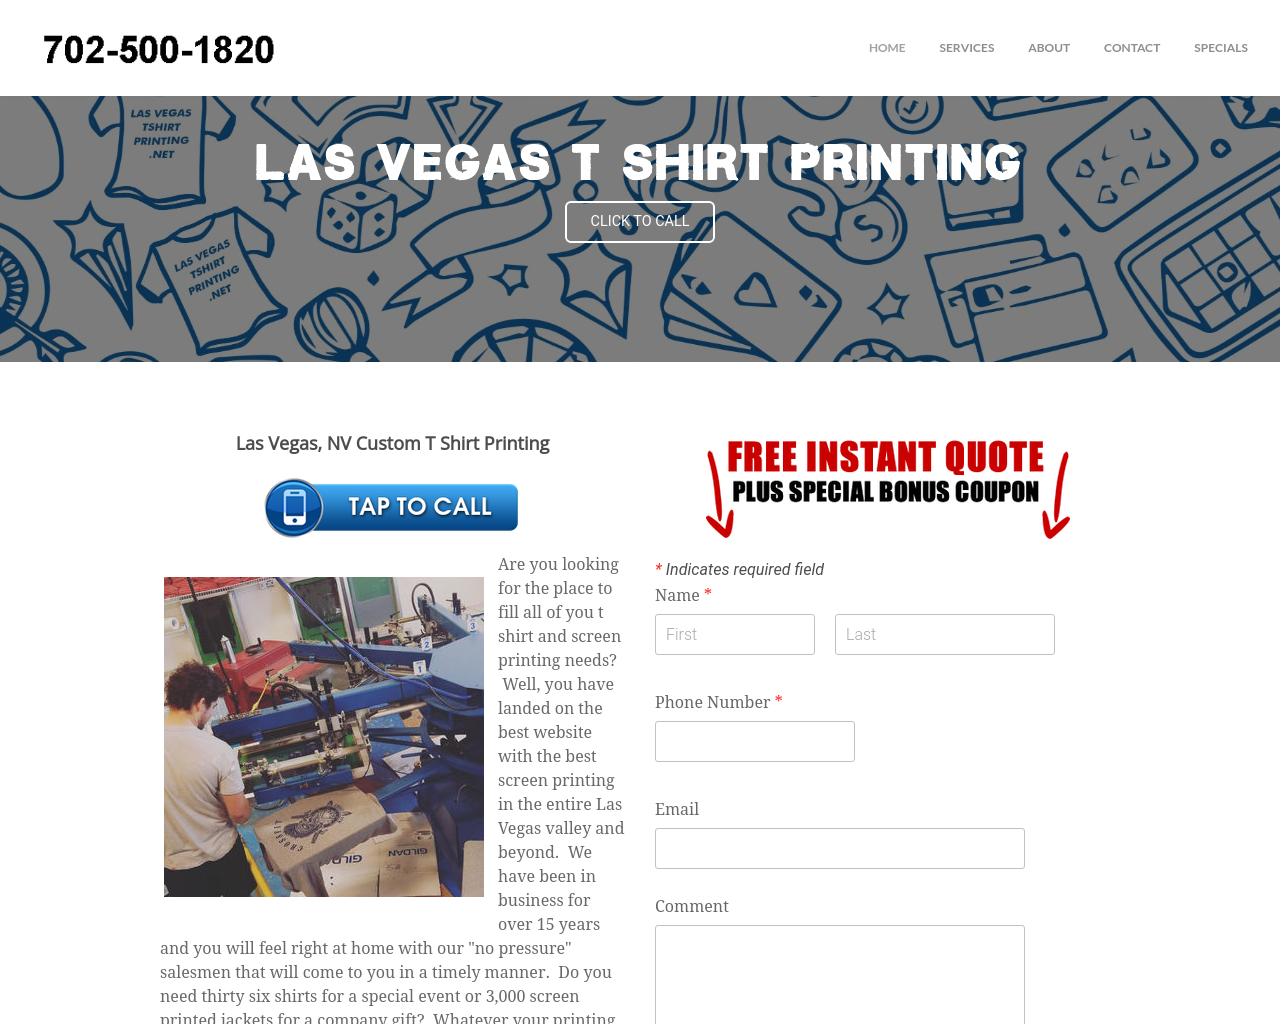 lasvegastshirtprinting.net